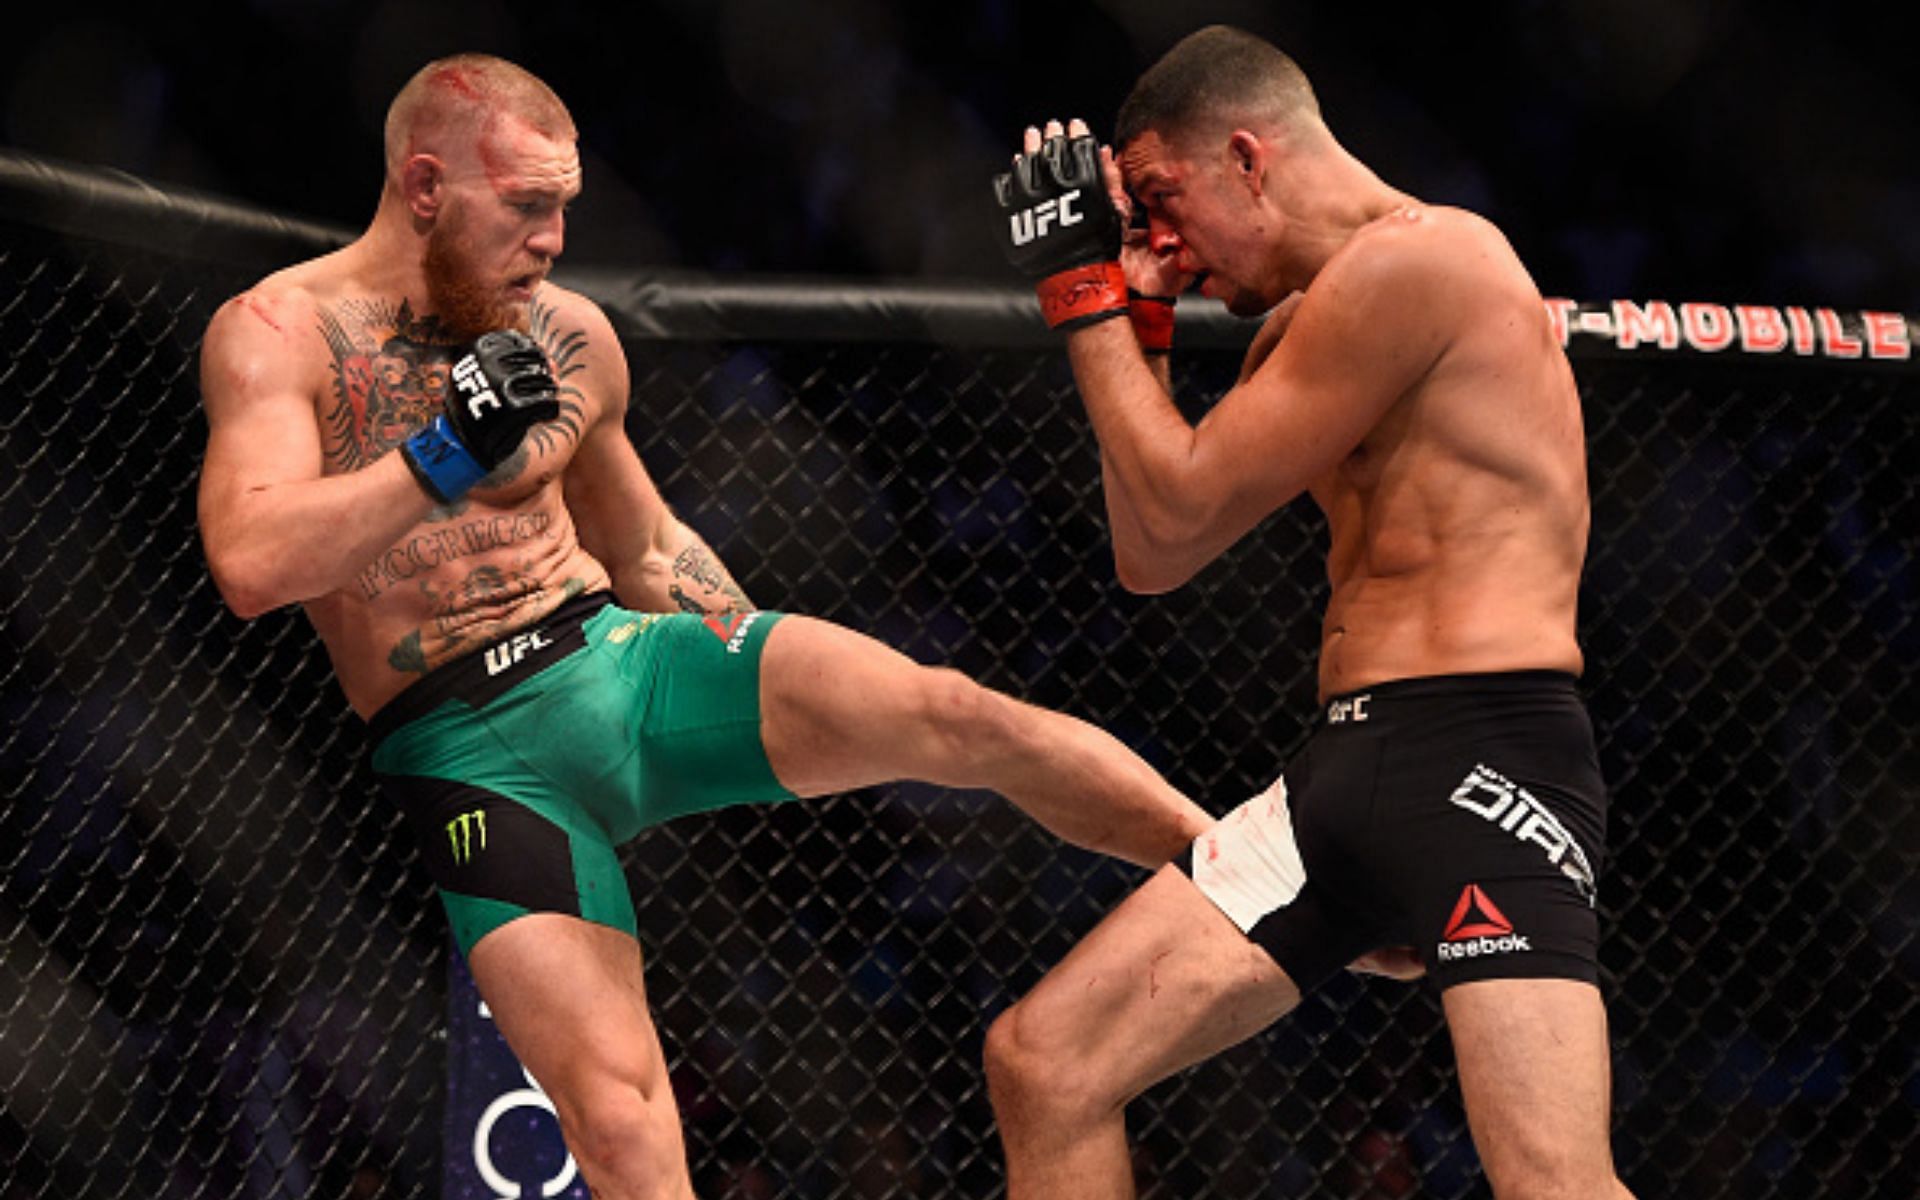 Conor McGregor vs. Nate Diaz at UFC 202